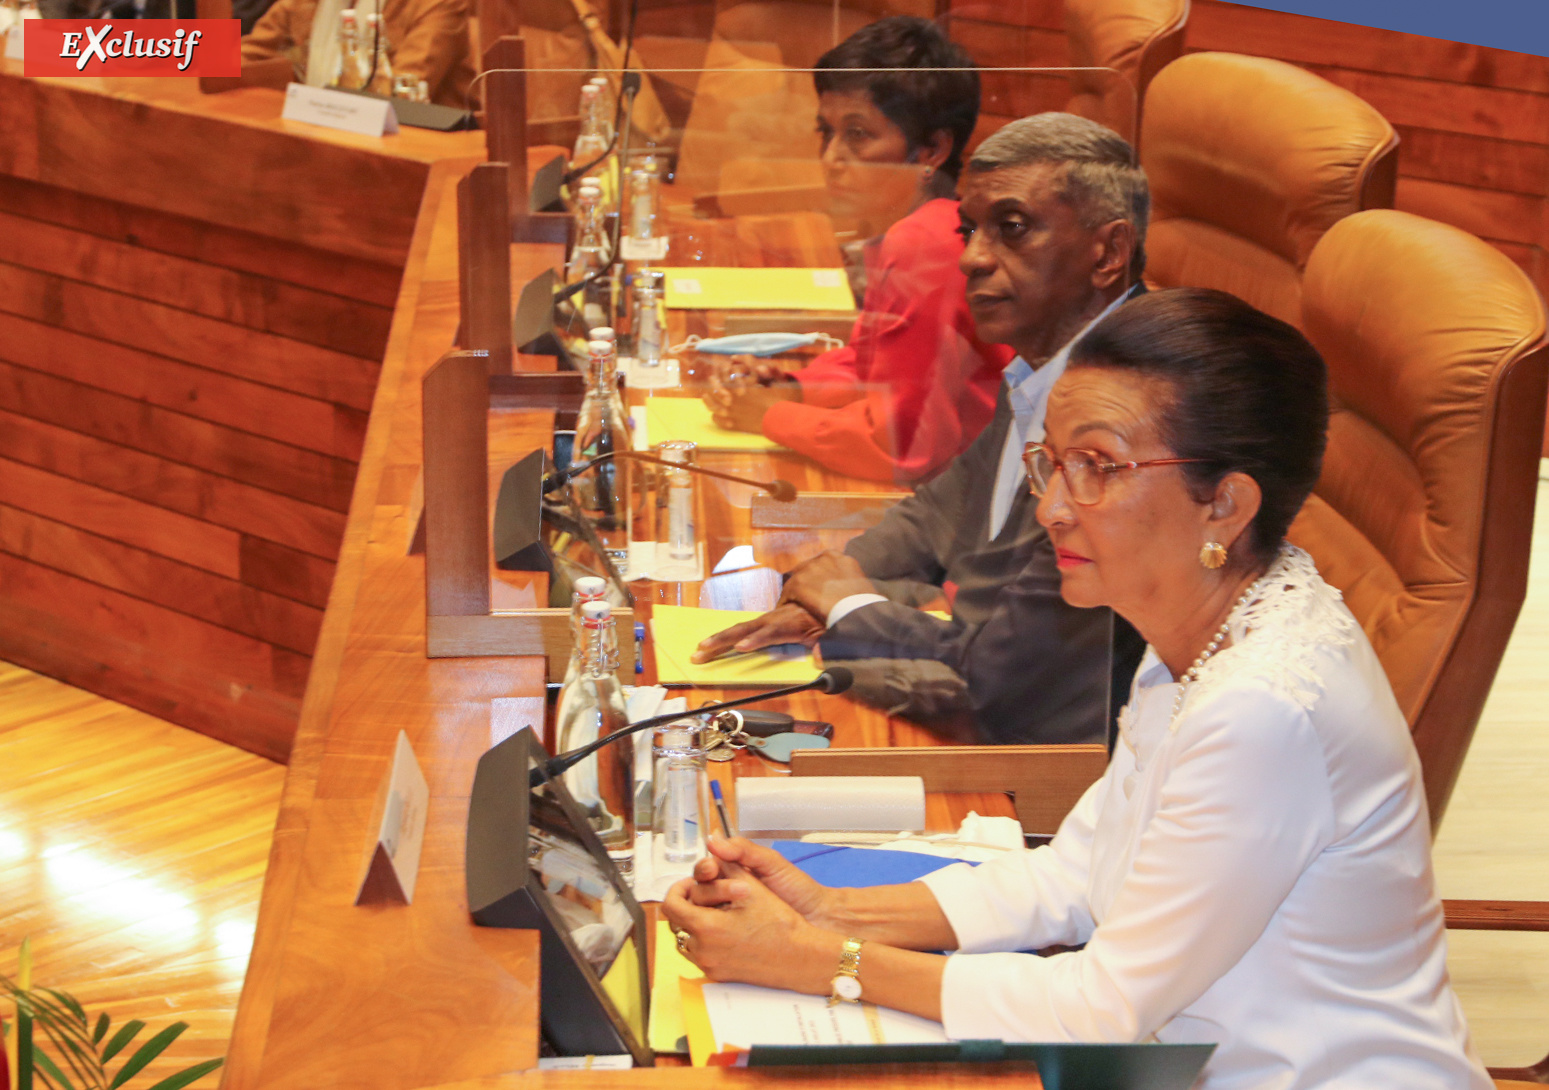 Huguette Bello élue présidente de la Région Réunion